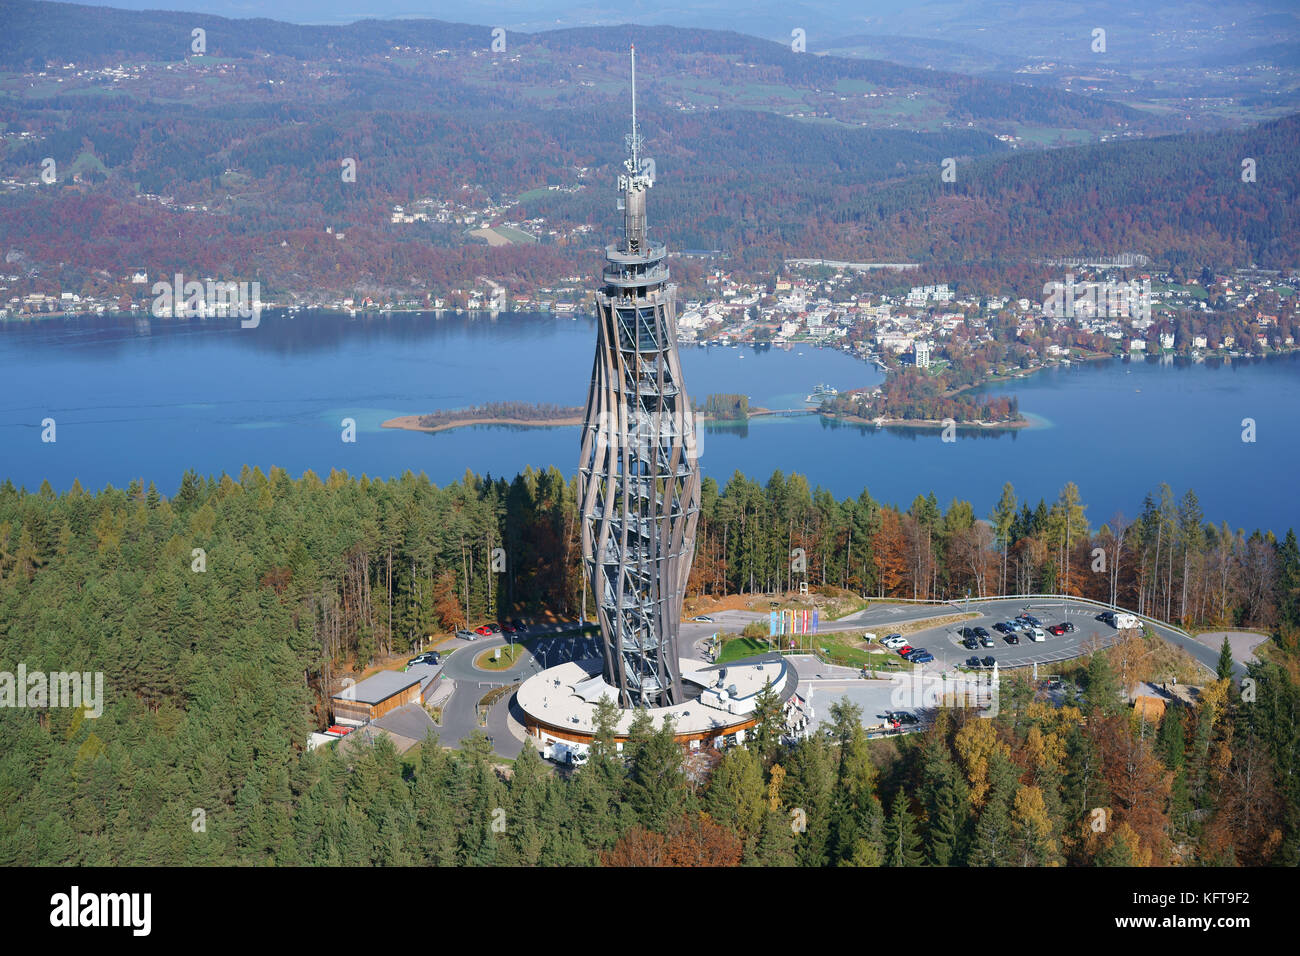 LUFTAUFNAHME. Futuristischer Holzturm für Beobachtung und Fernsehübertragung (Höhe: 100m). Pyramidenkogel, Wörthersee, Kärnten, Österreich. Stockfoto